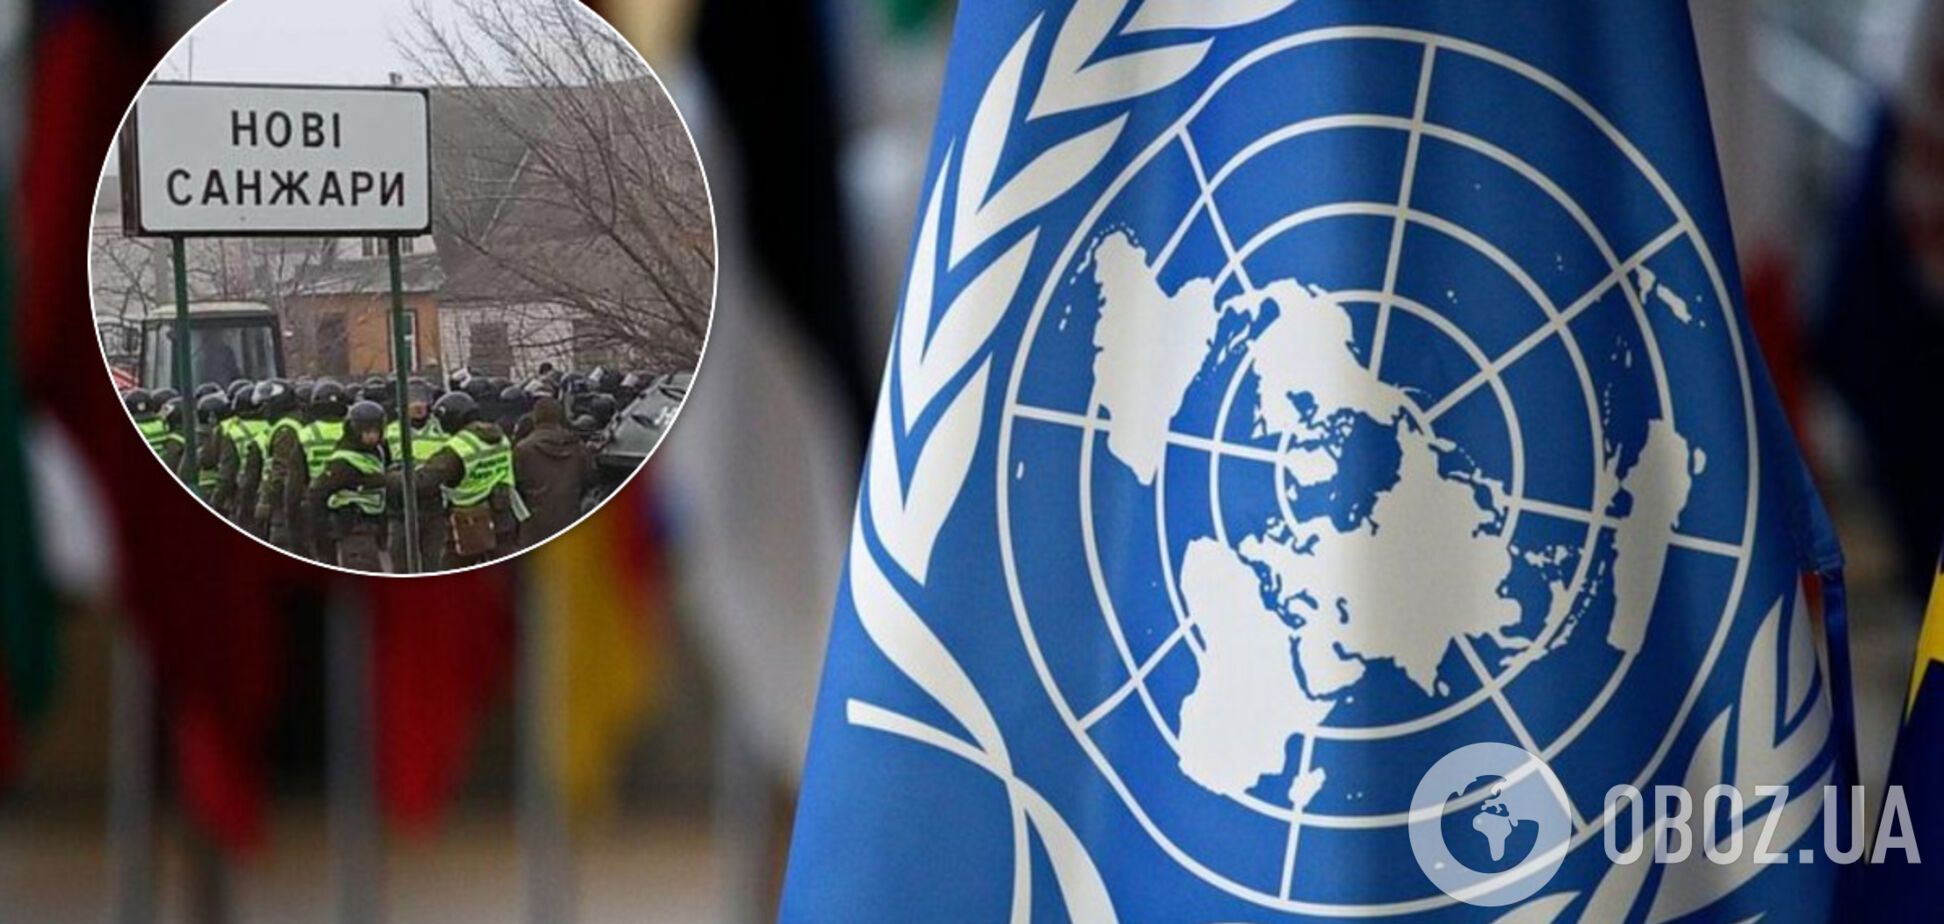 ООН осудила стычки в Новых Санжарах